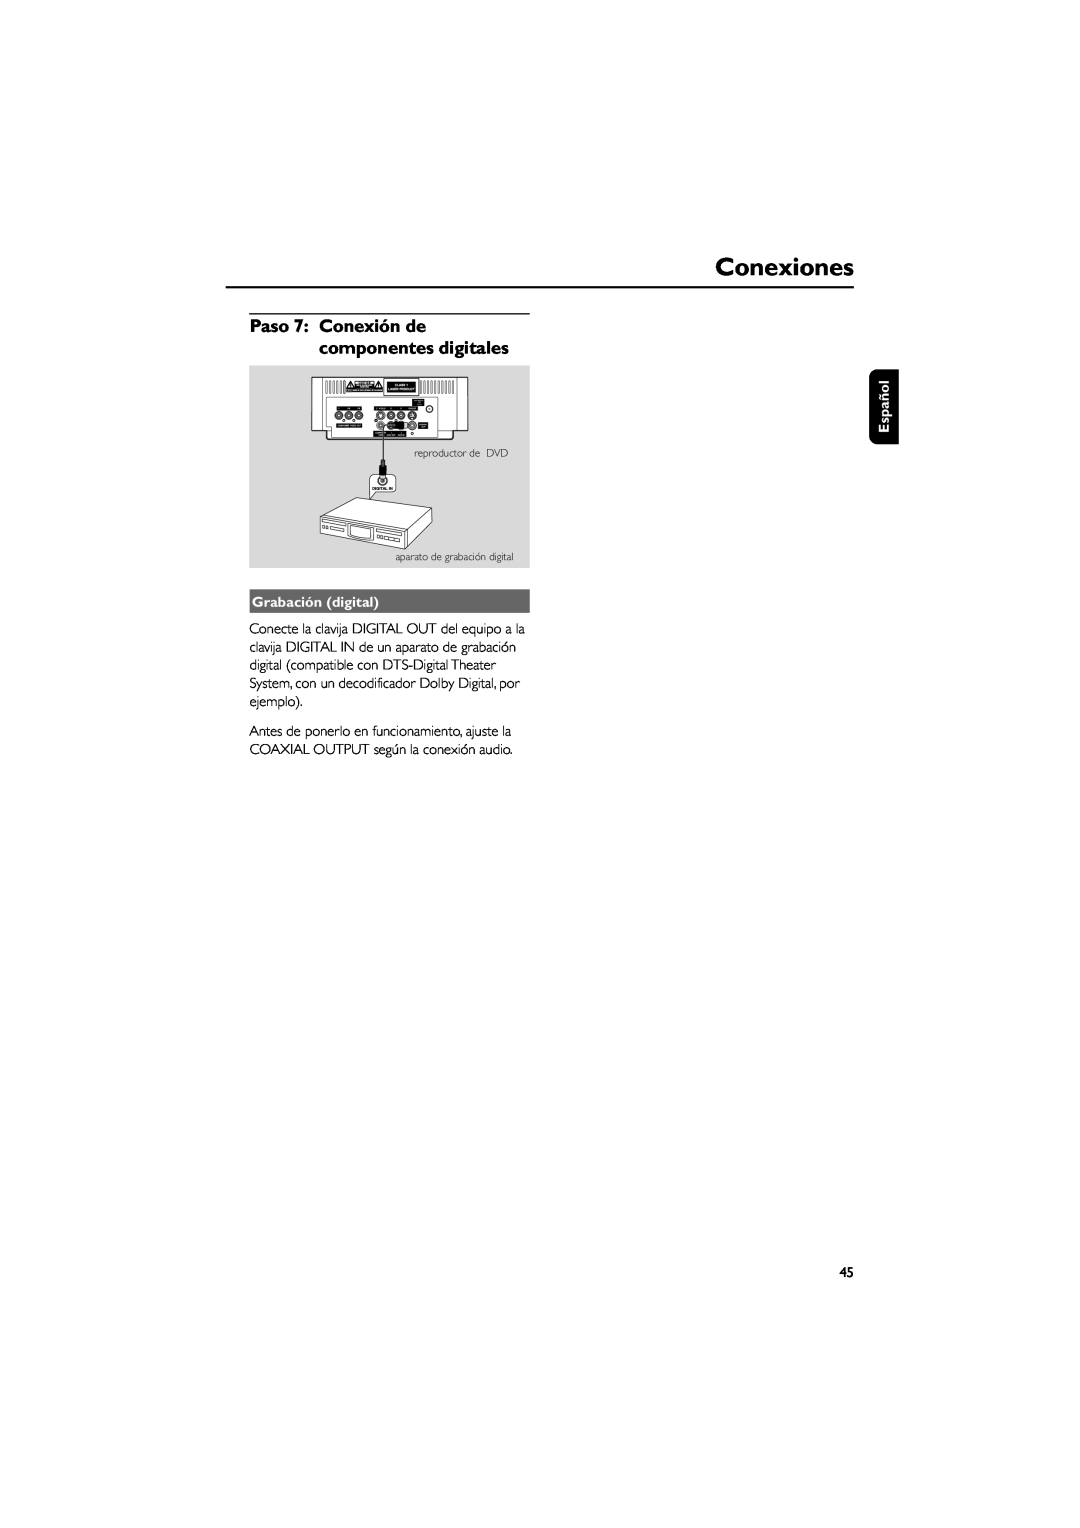 Philips MCD139 user manual Paso 7 Conexión de componentes digitales, Conexiones, Grabación digital, Español, ANTENNA FM 75Ω 